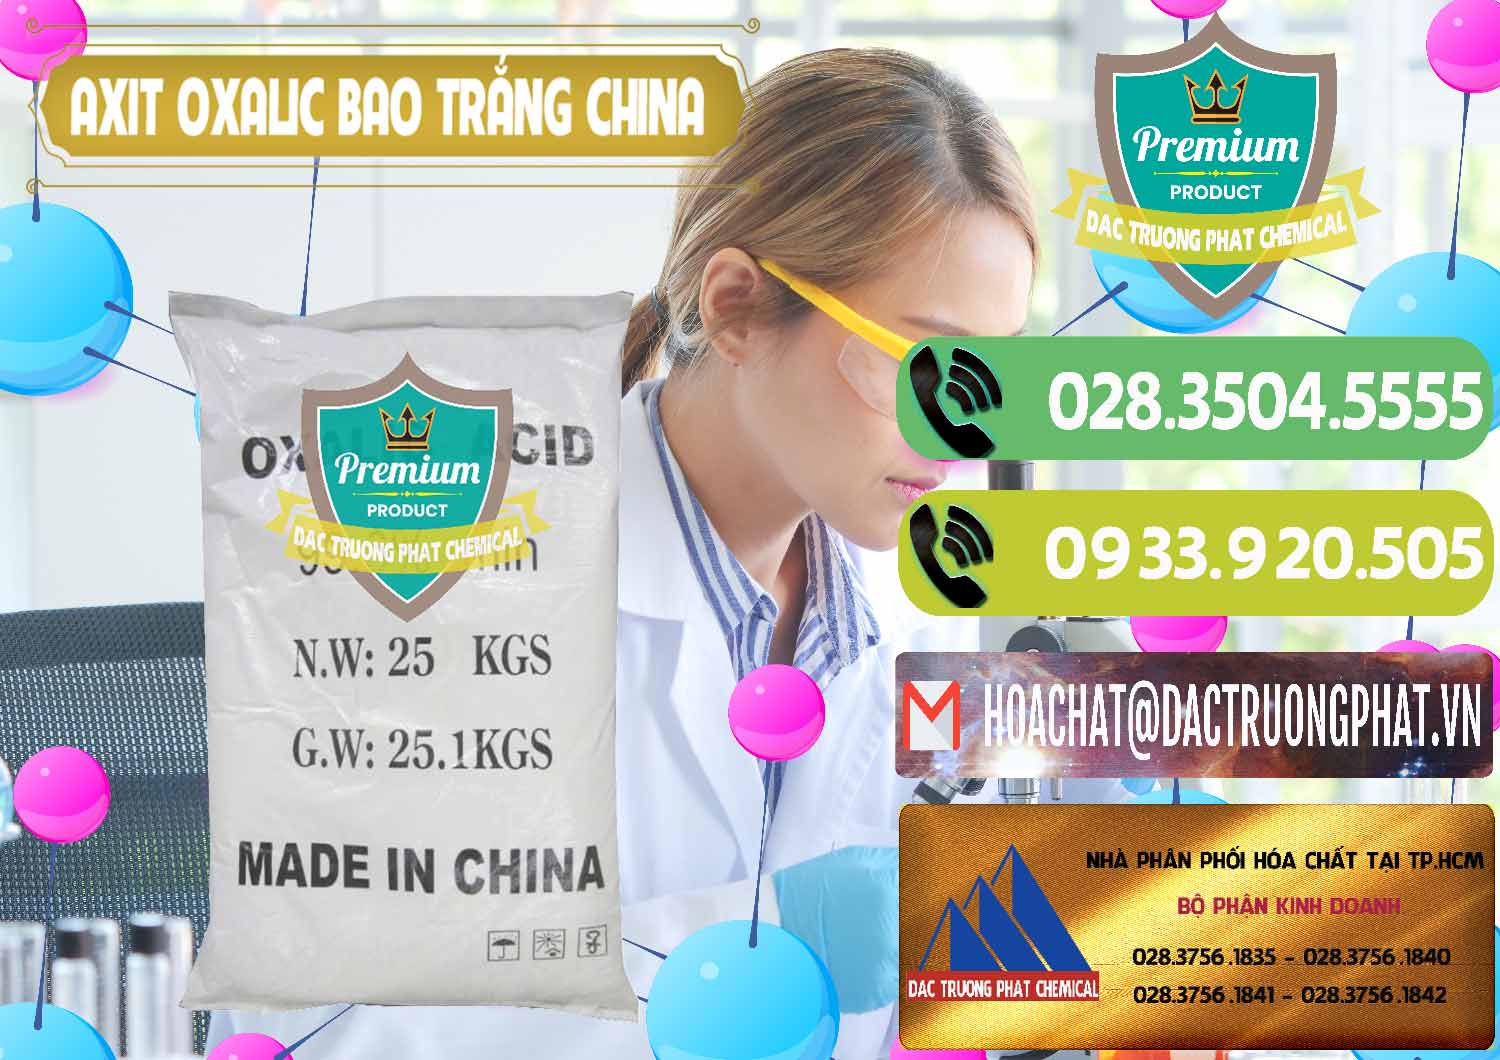 Nơi chuyên bán - cung cấp Acid Oxalic – Axit Oxalic 99.6% Bao Trắng Trung Quốc China - 0270 - Đơn vị chuyên bán và phân phối hóa chất tại TP.HCM - hoachatmientay.vn